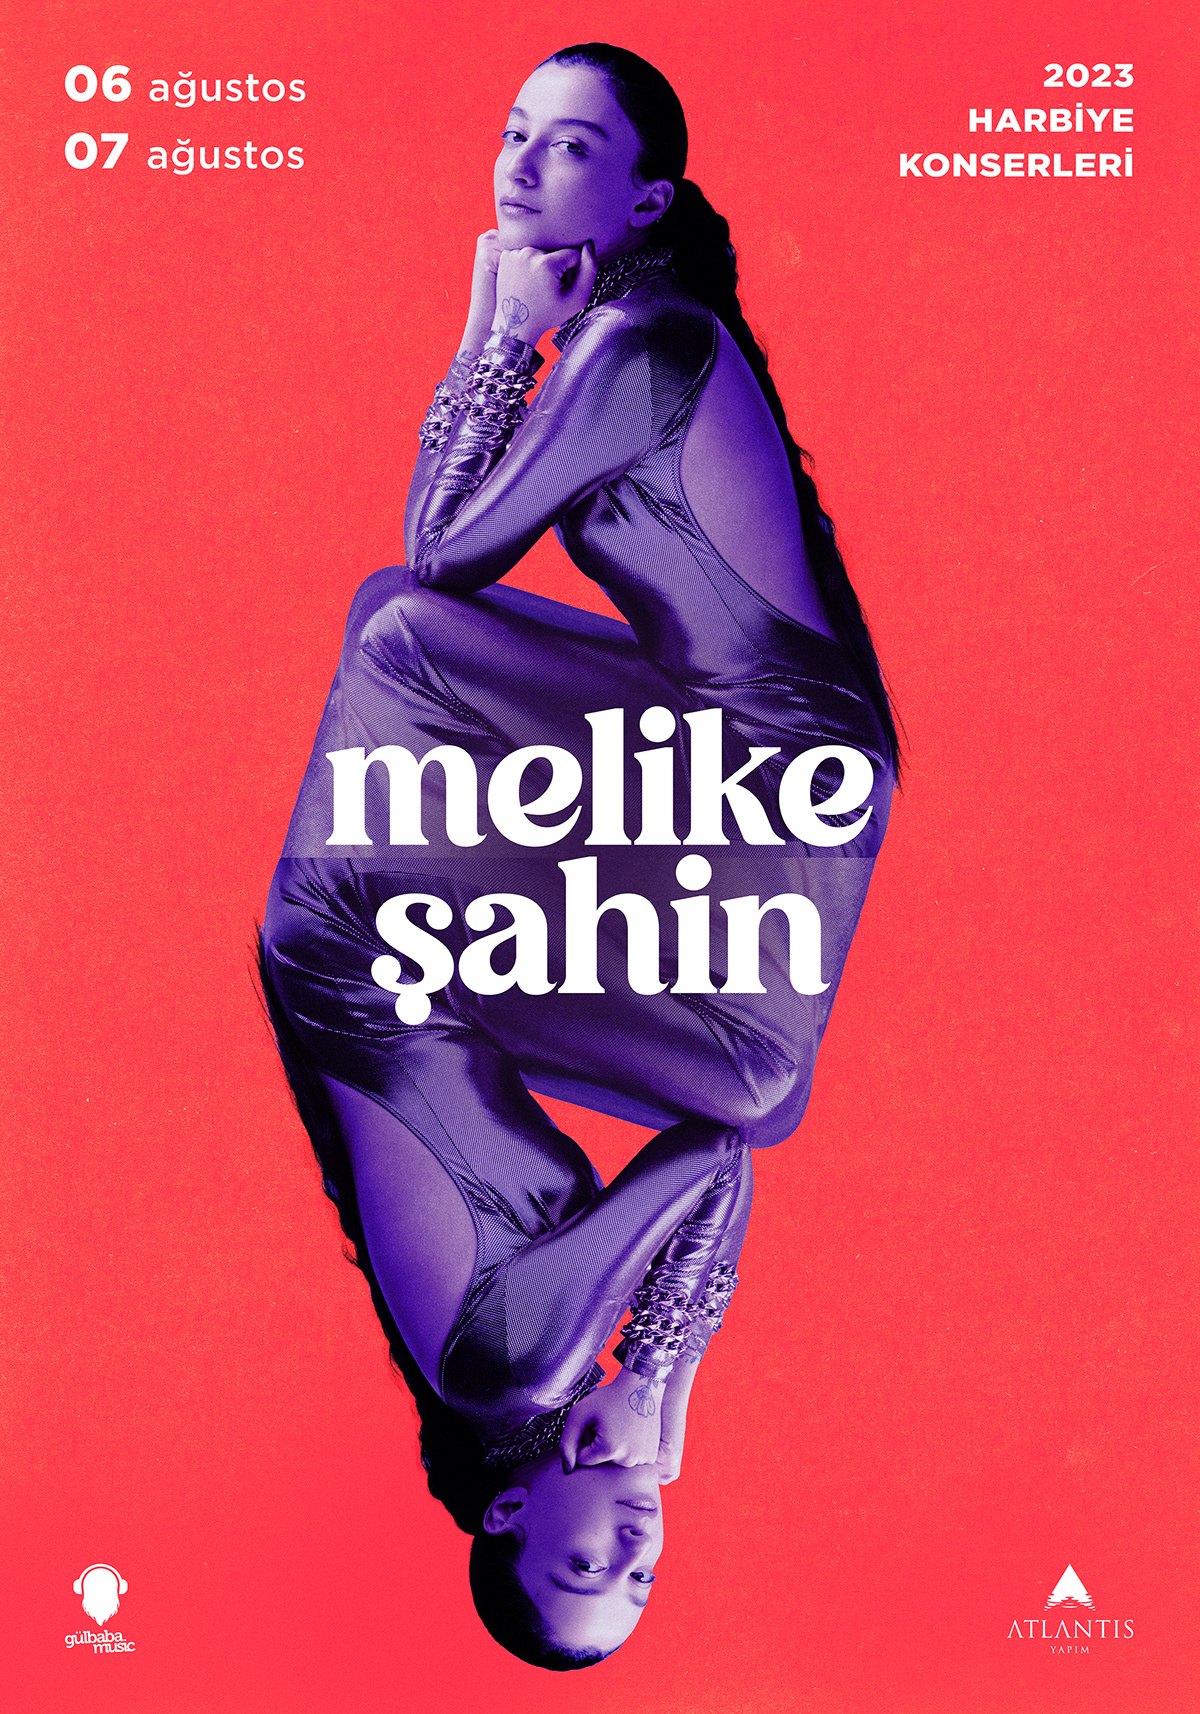 concert poster music artwork berkcan okar yer creative Singer harbiye konser Melike Şahin